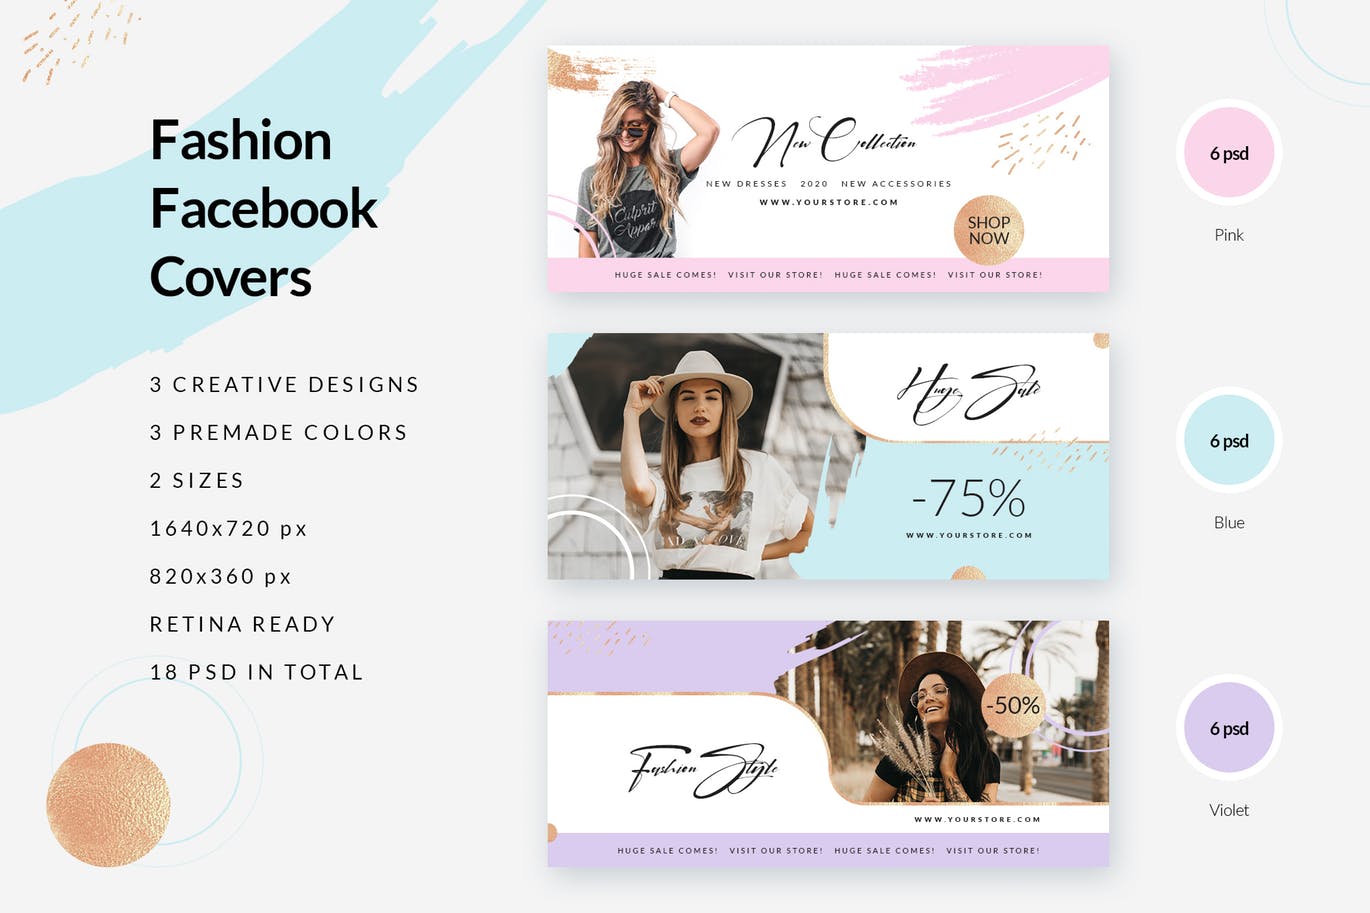 时尚品牌打折促销Facebook封面设计模板大洋岛精选 Fashion Facebook Covers插图